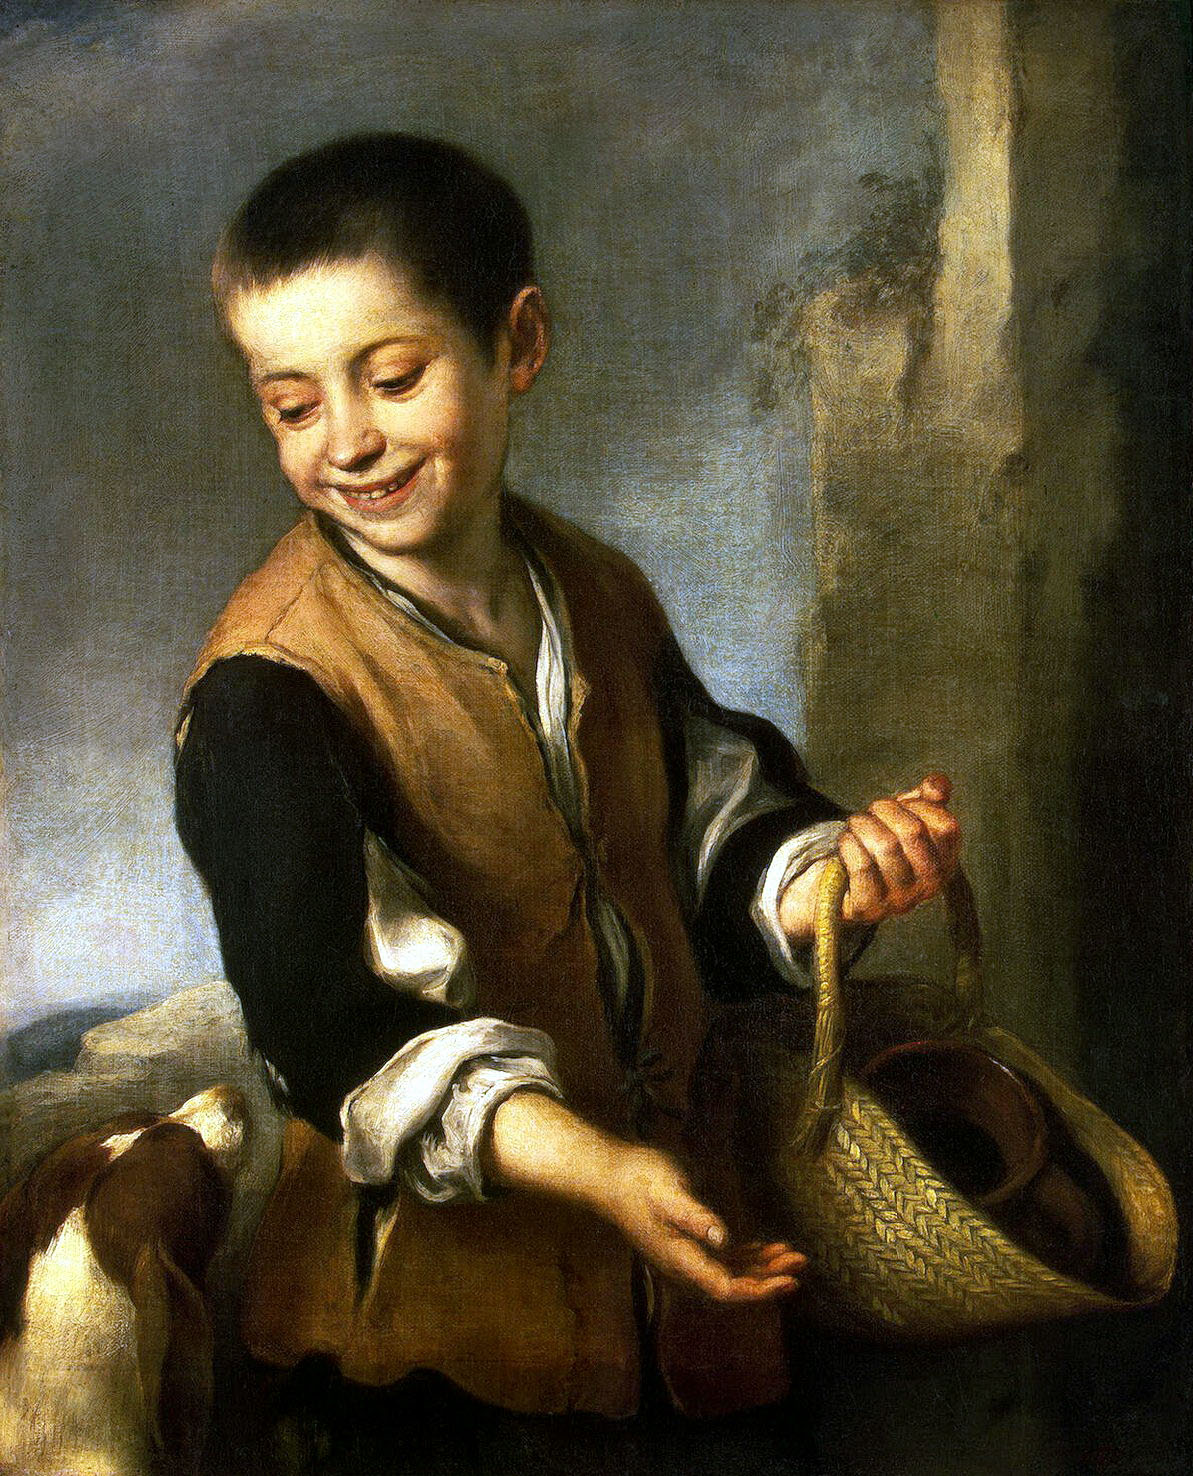 Бартоломе Эстебан Мурильо. "Мальчик с собакой". Между 1655 и 1660. Эрмитаж, Санкт-Петербург.